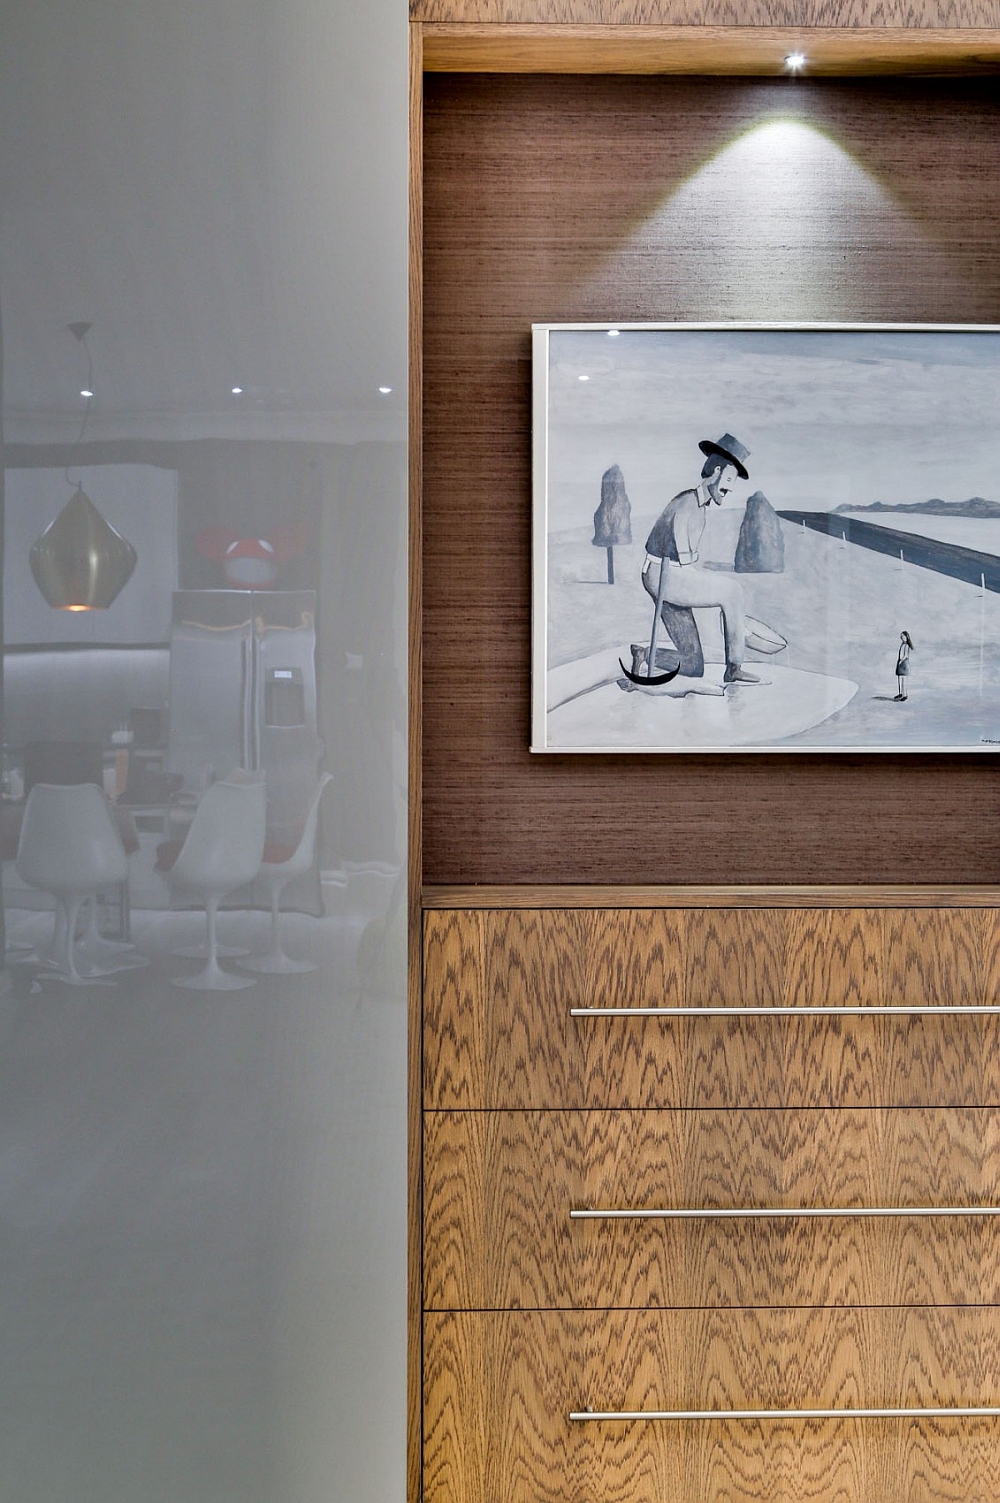 Роскошные апартаменты для убеждённого холостяка: эксклюзивное оформление от агентства daniel hopwood interior design, великобритания